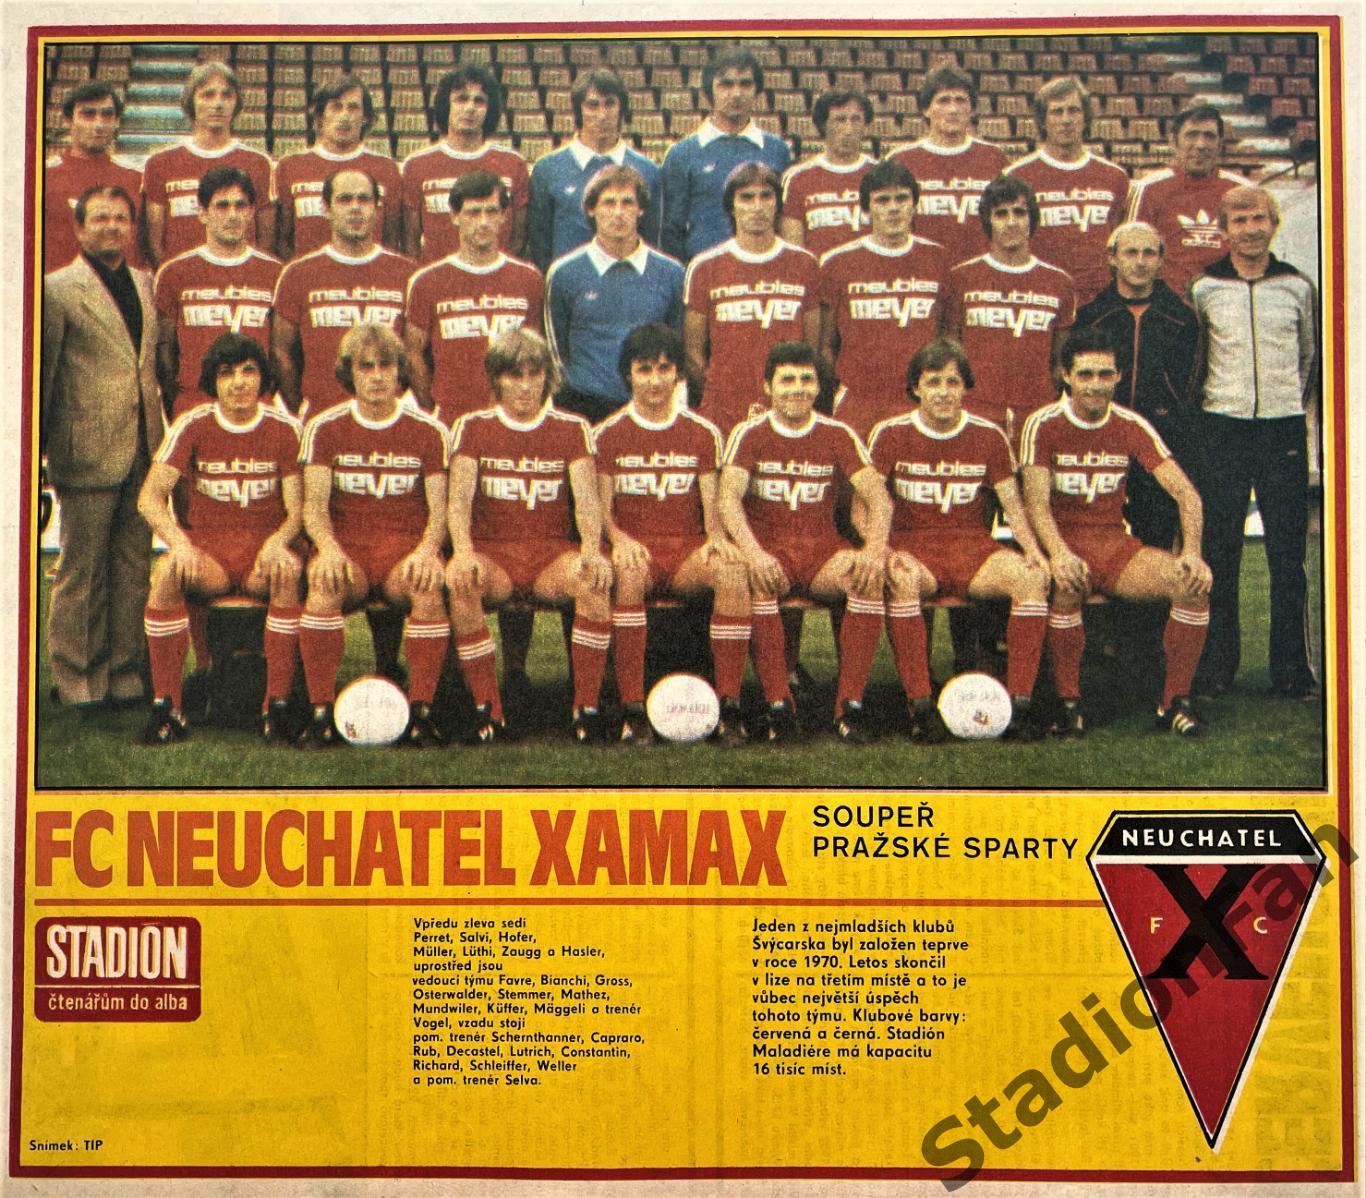 Постер из журнала Стадион (Stadion) - Neuchatel Xamax, 1981.